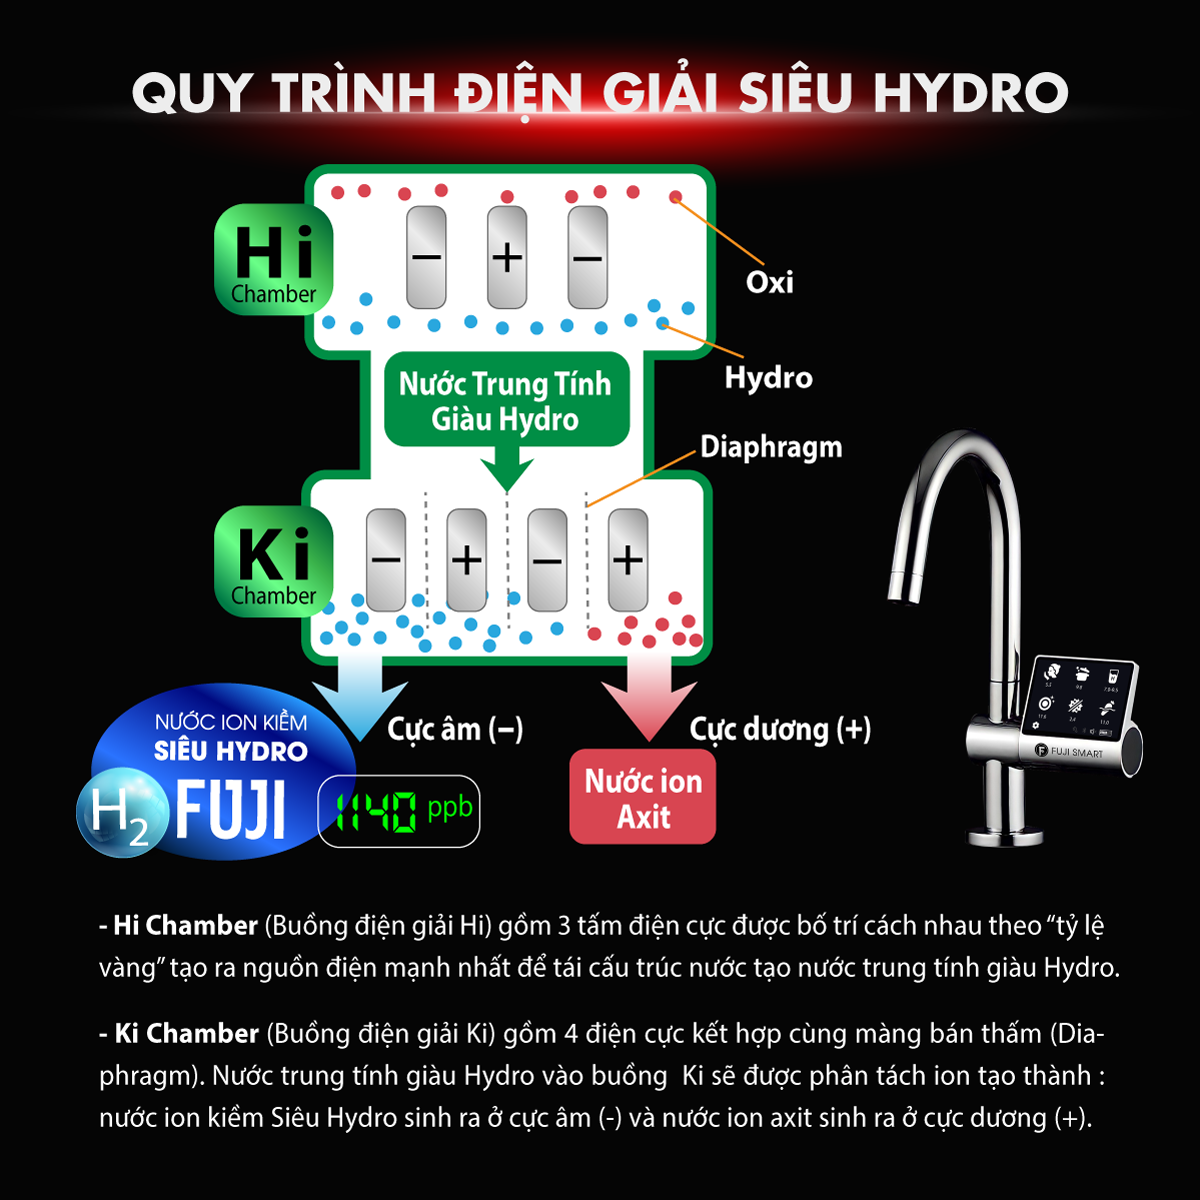 Quy trình điện giải siêu Hydro Fuji Smart JP900 1140ppb